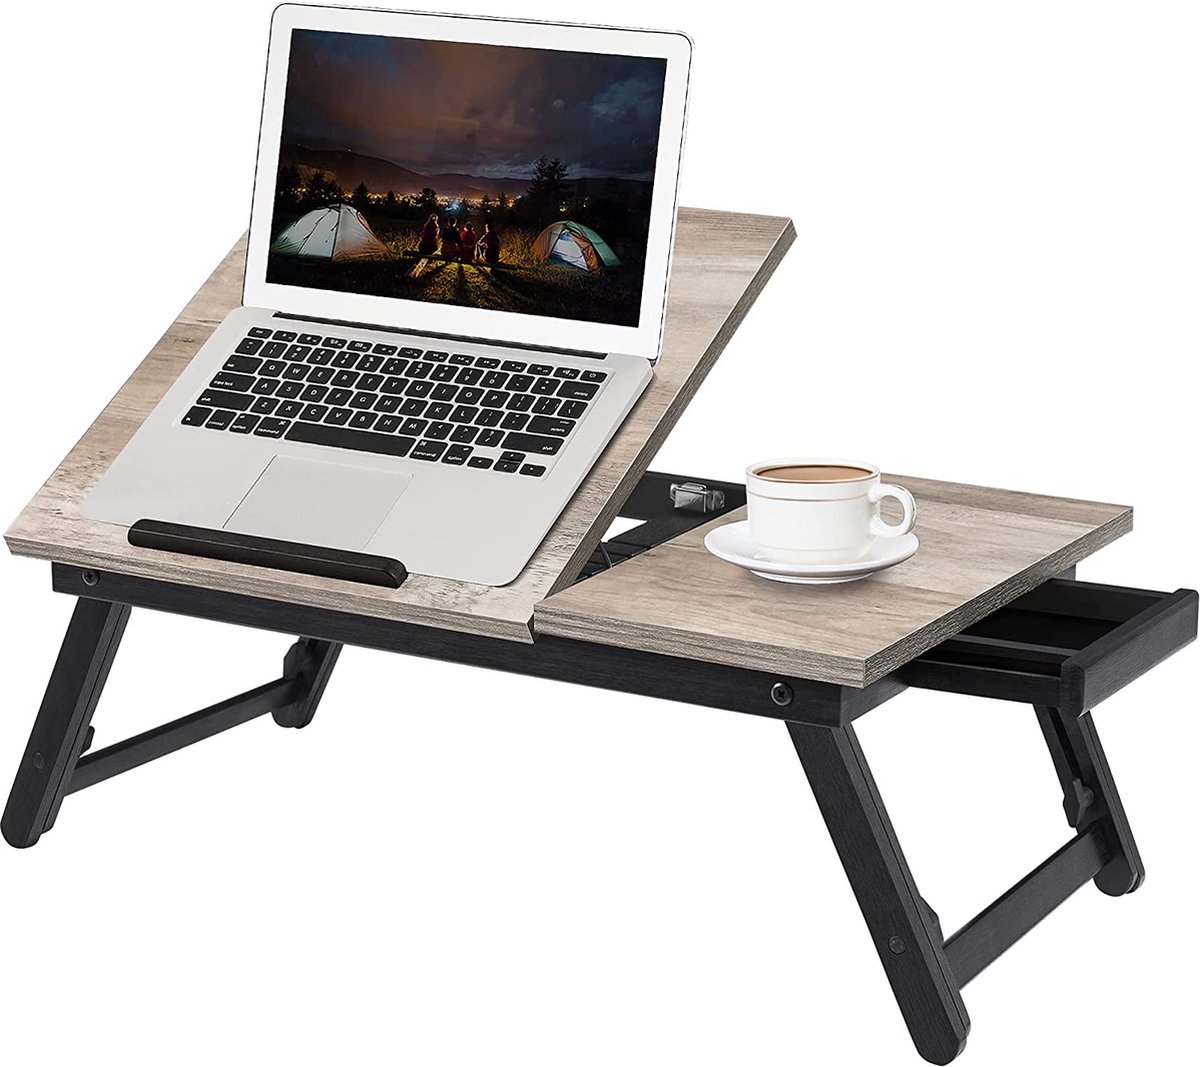 Povox - Laptoptafel, laptopstandaard, ontbijtblad, inklapbare poten, voor bed en bank, in hoogte verstelbaar, voor laptops tot 15,6 inch, 55 x 35 x 23 cm, grijs